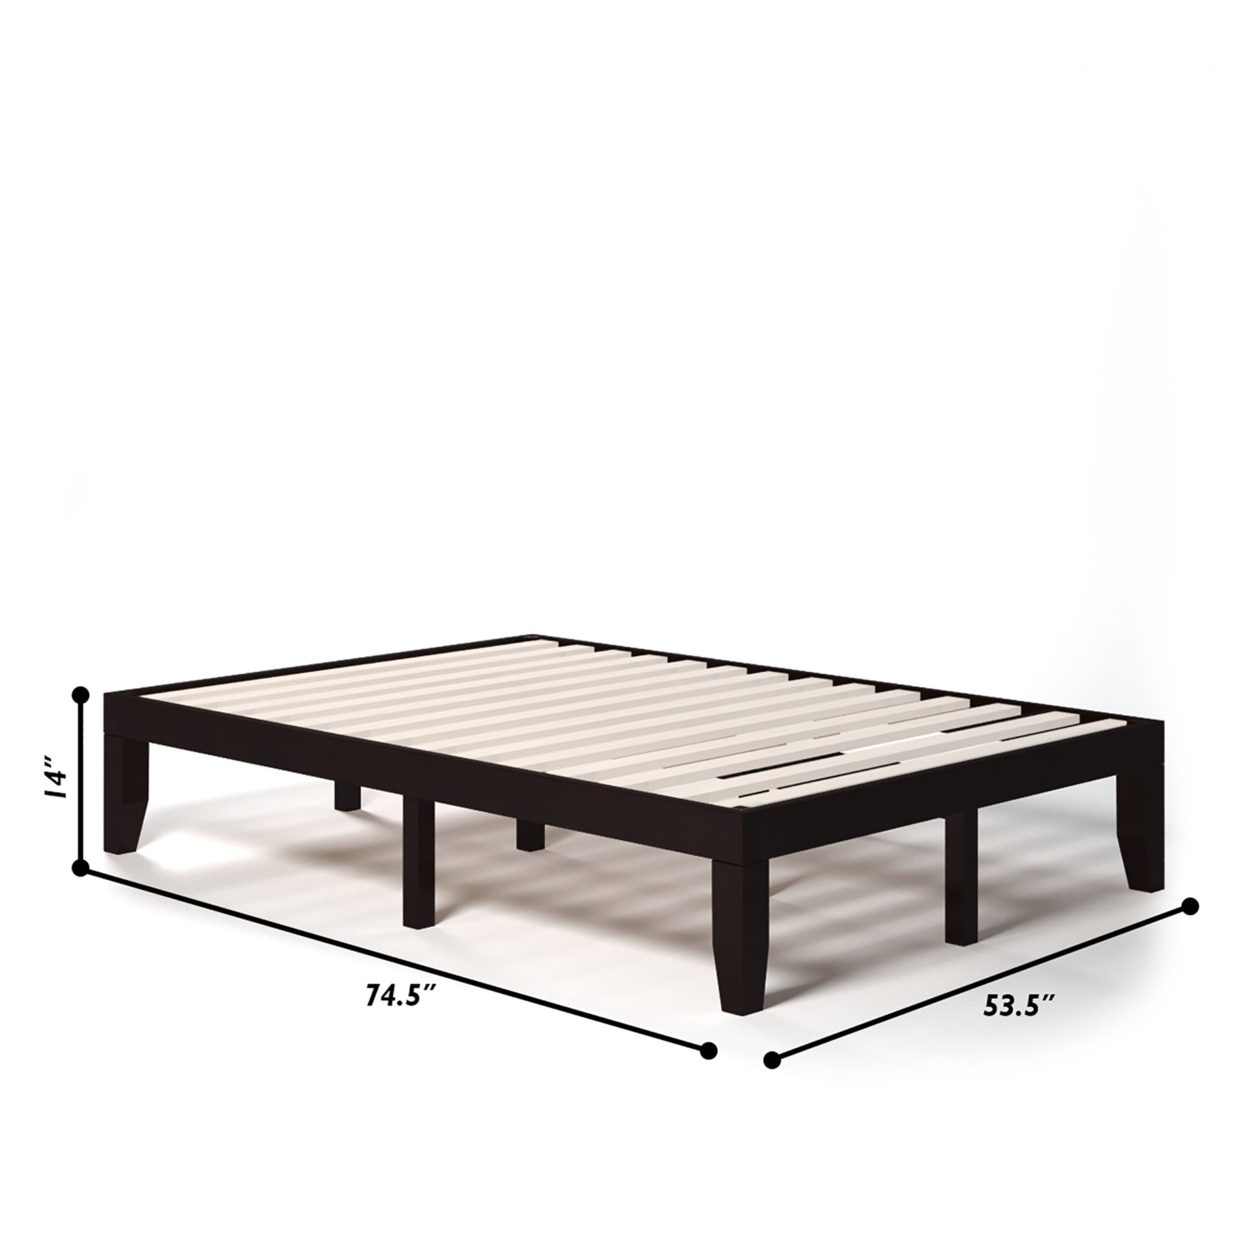 14'' Full Size Wooden Platform Bed Frame W/ Strong Slat Support - Espresso